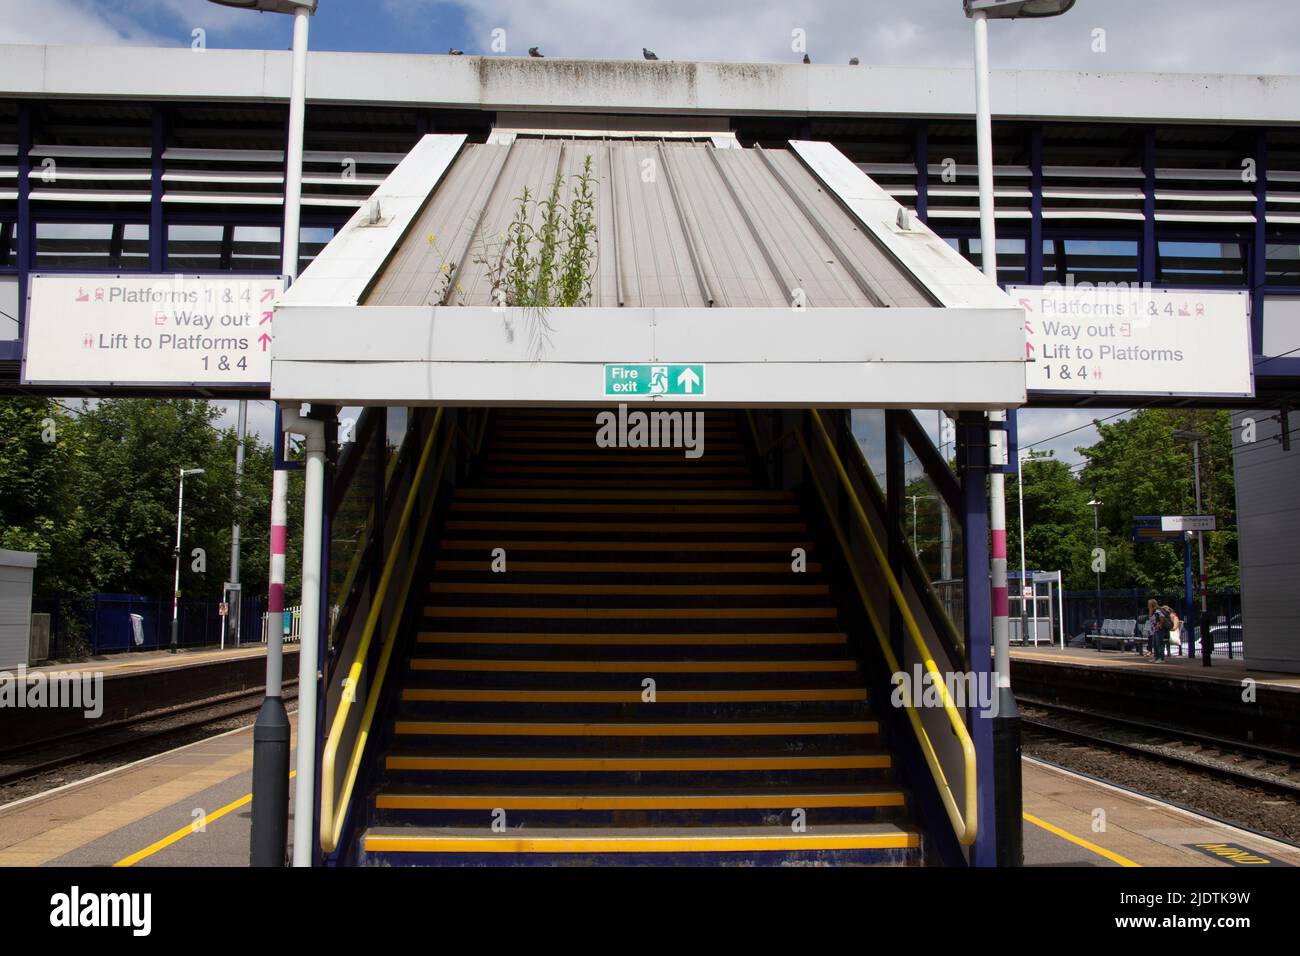 Escalier de la gare de Harpenden vers et depuis la plate-forme, Hertfordshire, Angleterre Royaume-Uni Banque D'Images